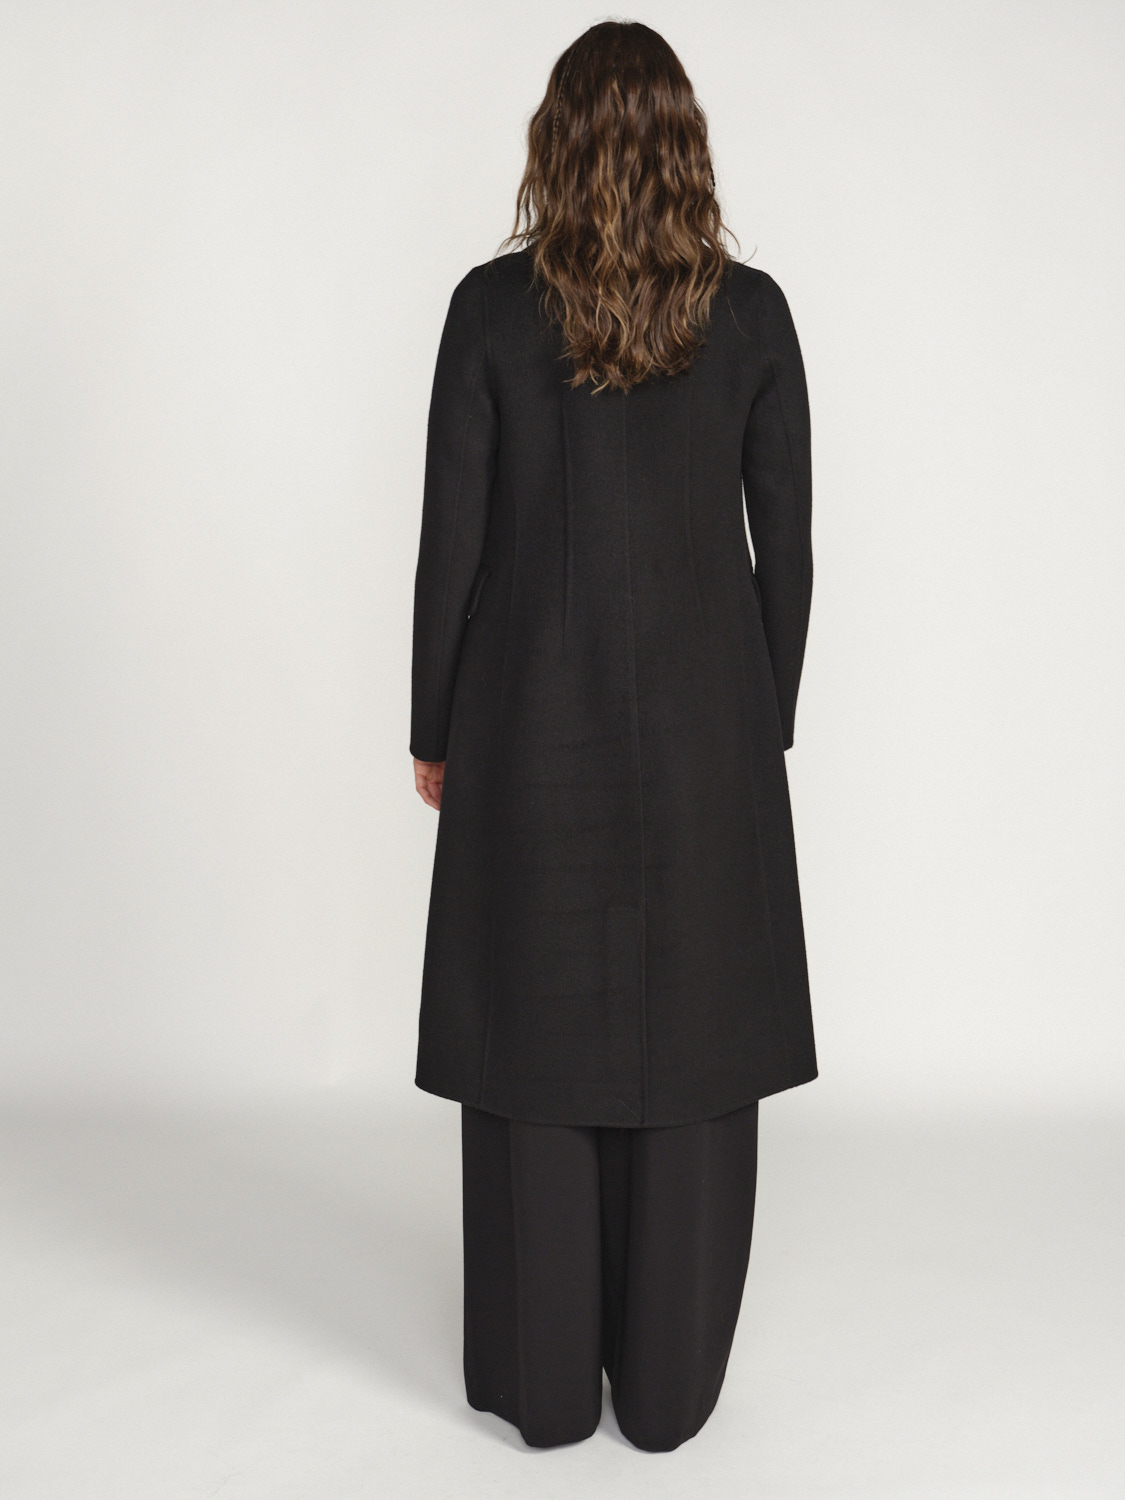 Arma Sao Paulo – Klassischer Mantel mit Knopfleiste aus Wolle schwarz 36